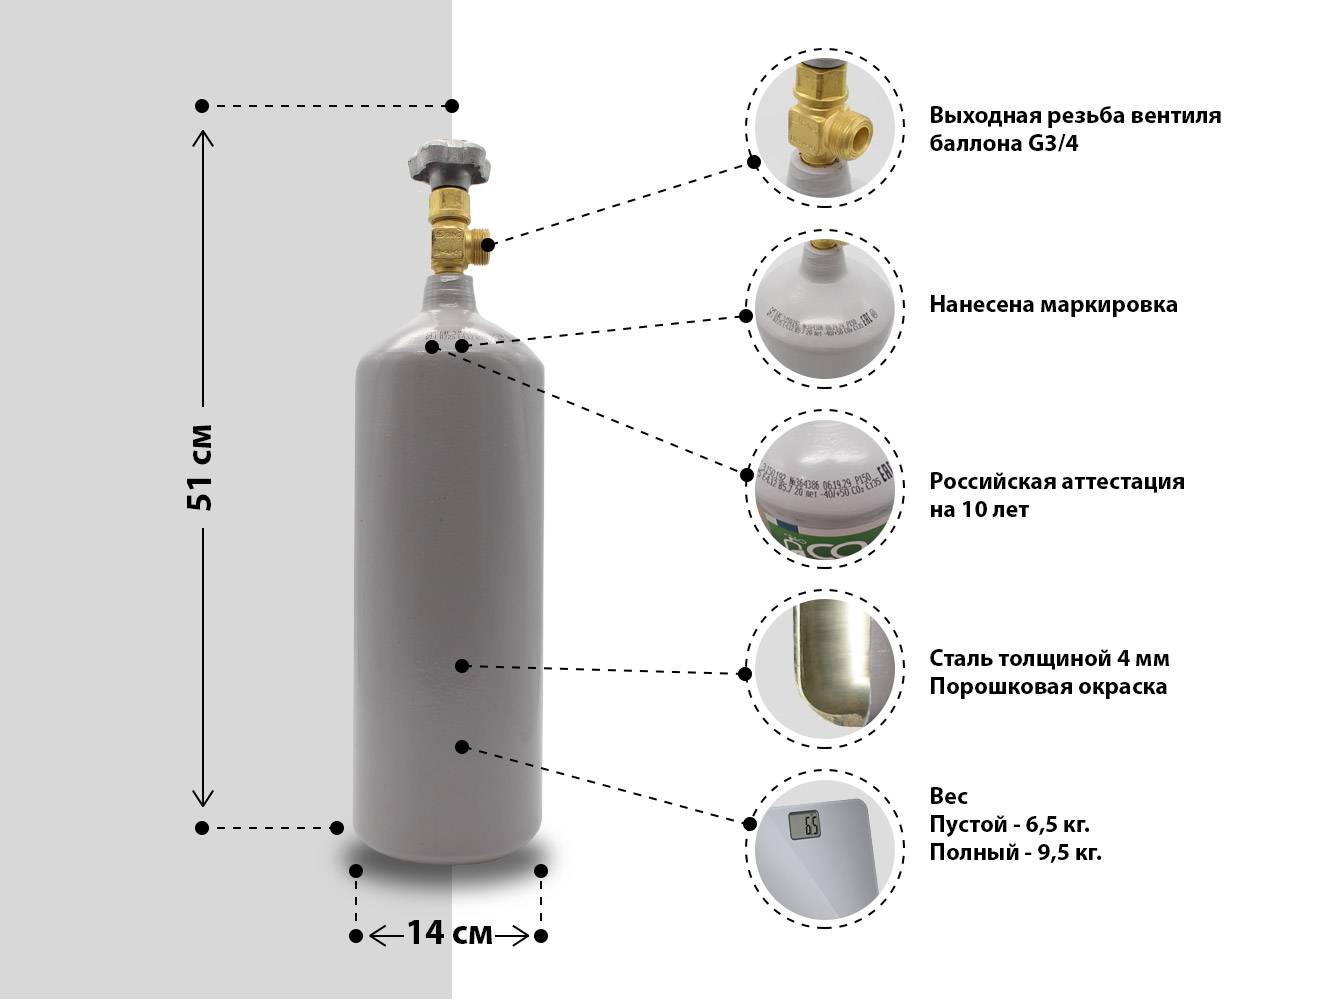 Газовый камин на баллонном газе, по каким критериям оценить его качество